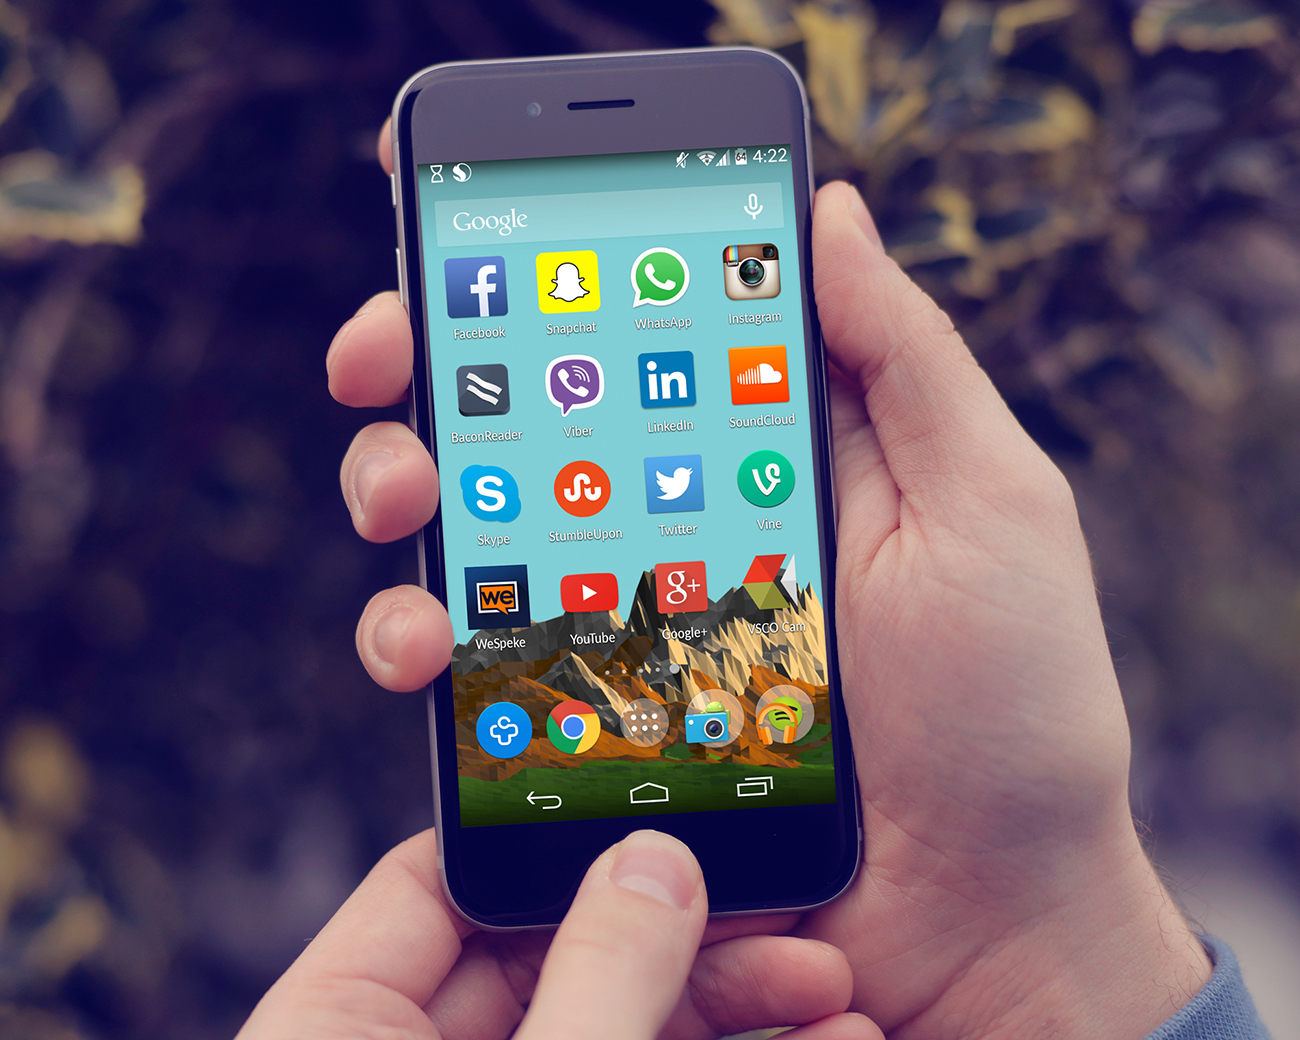 Une photo montre l'écran d'un téléphone portable avec de nombreuses applications, notamment Facebook, Skype, Twitter, LinkedIn et Instagram.